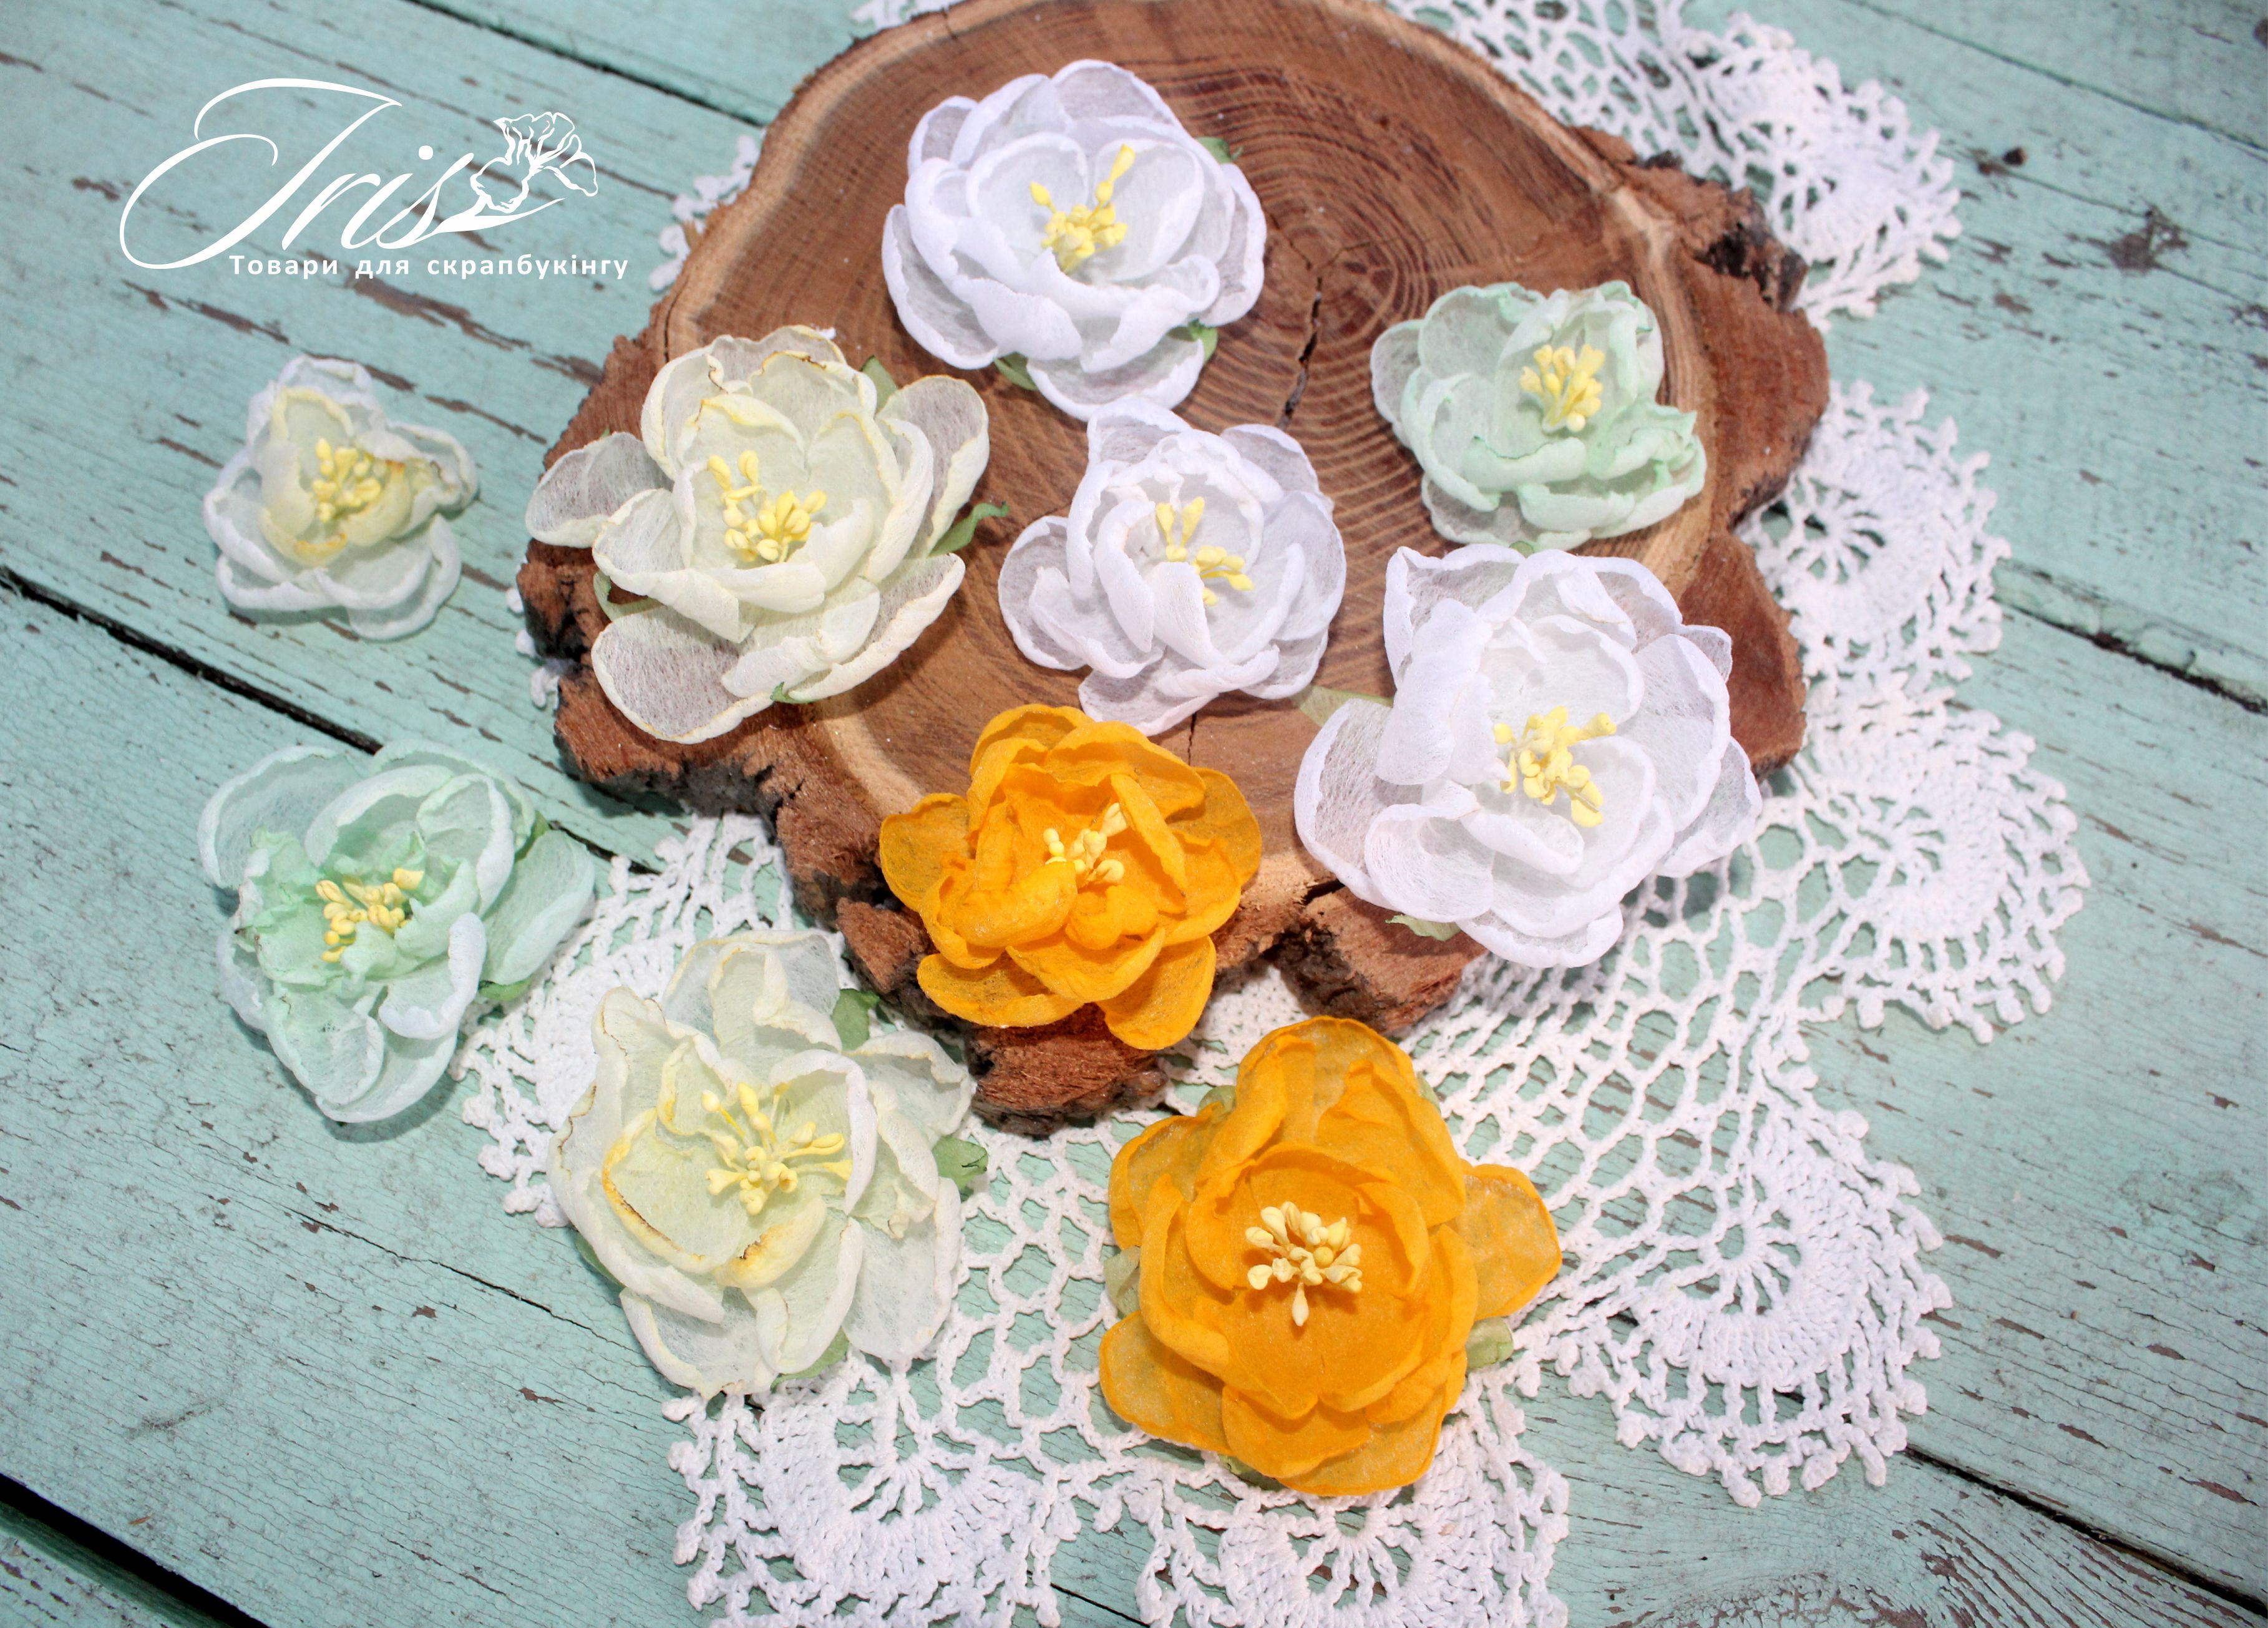 Набор цветов и декора, Royalty flowers Желто-зеленый микс, 40-50 мм, 10 шт, Iris